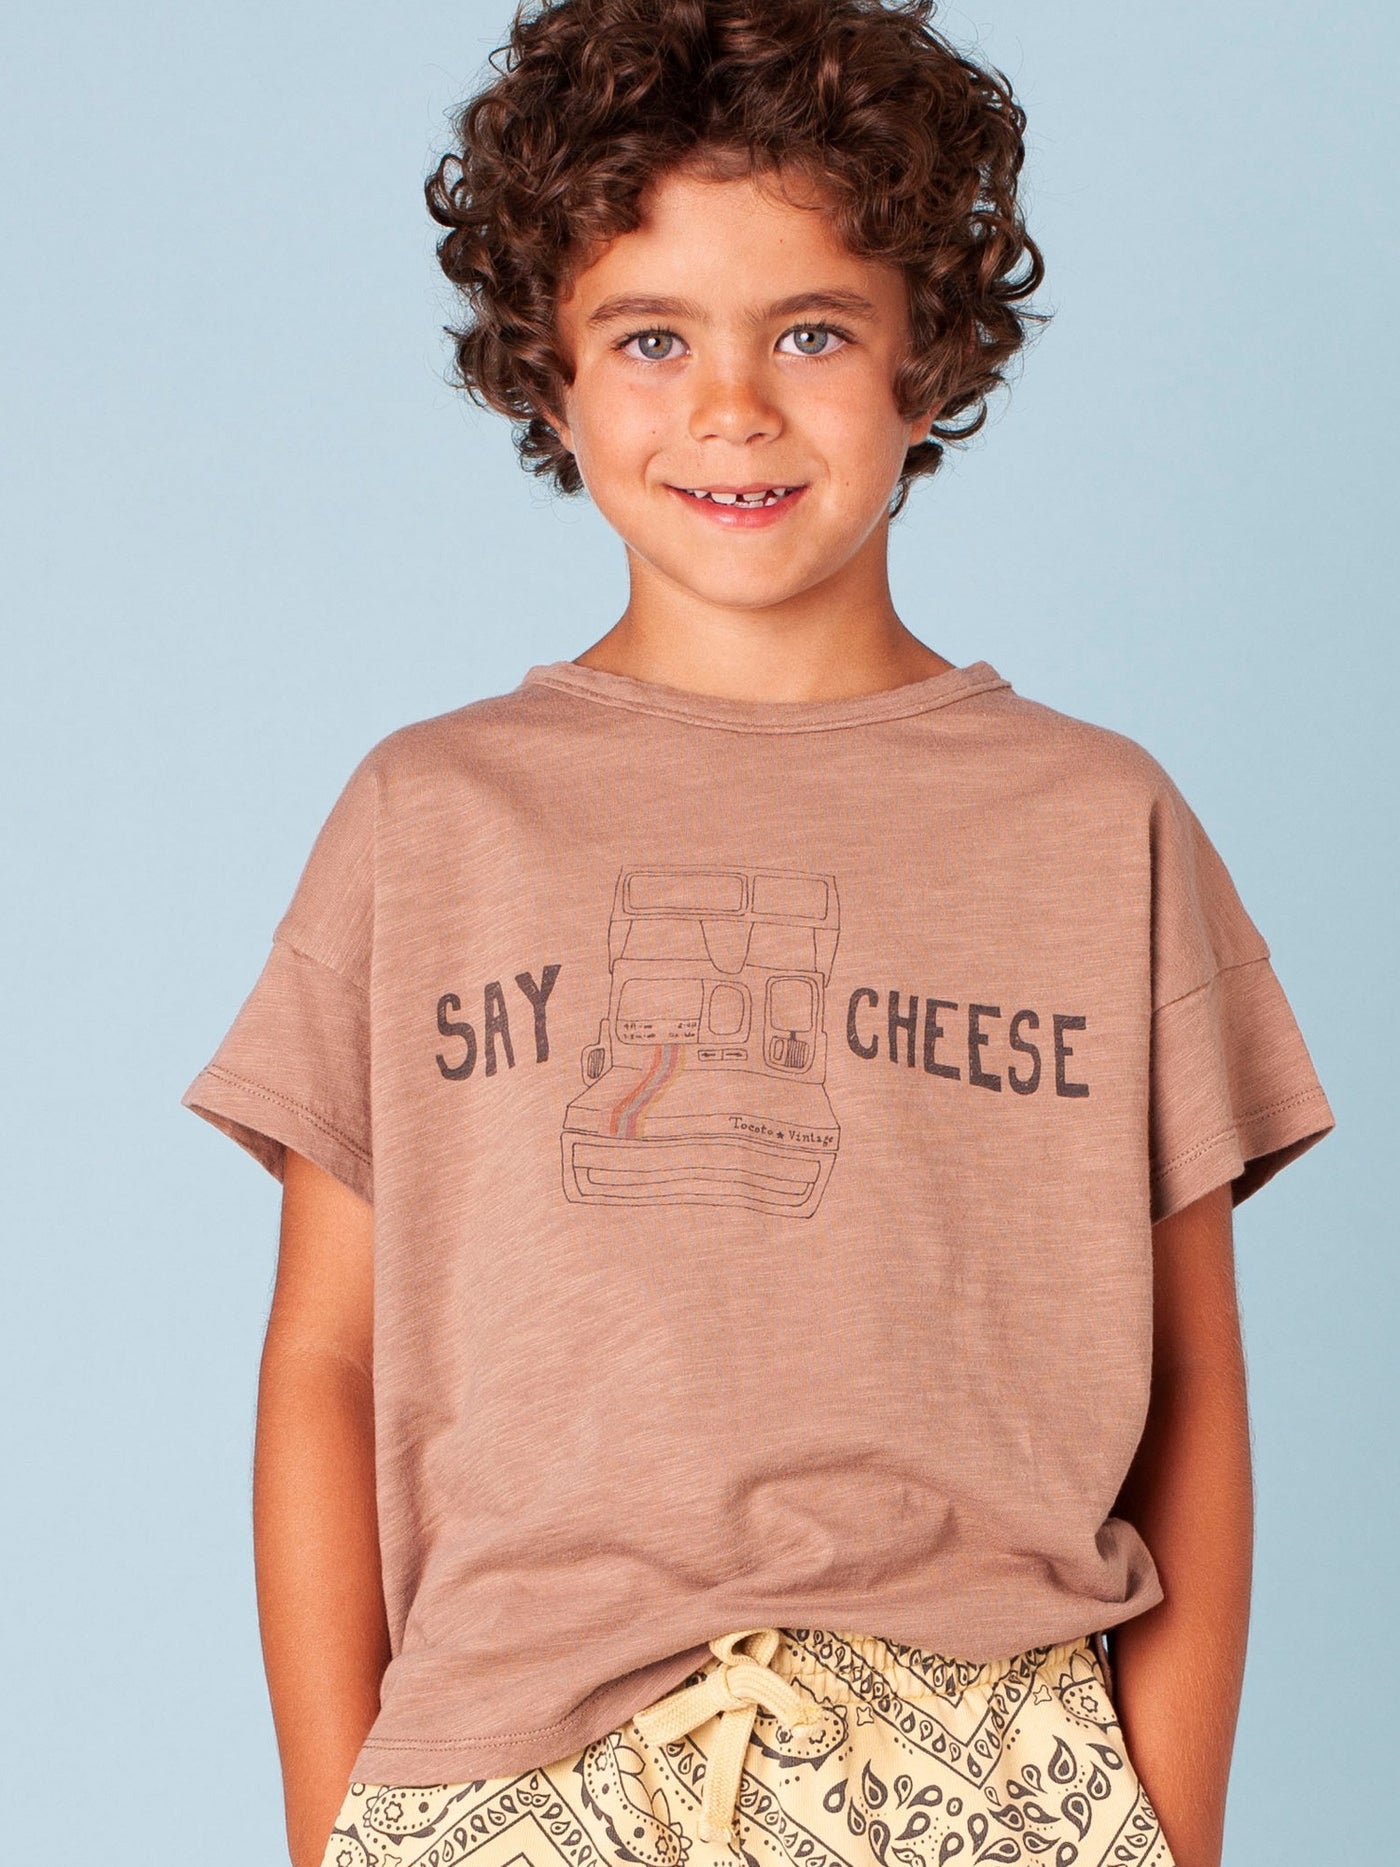 "Say Cheese" T-Shirt